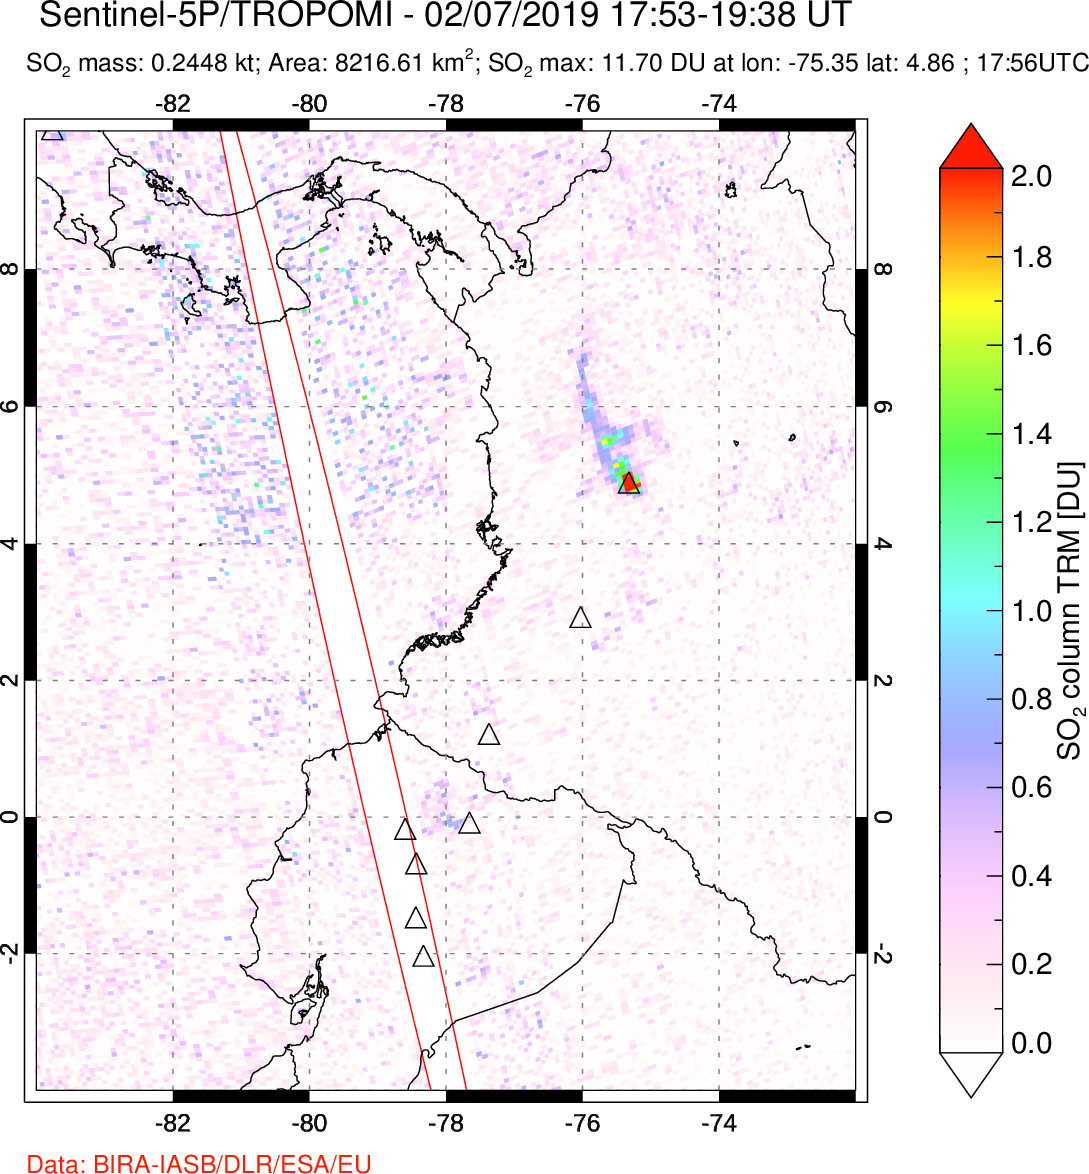 A sulfur dioxide image over Ecuador on Feb 07, 2019.